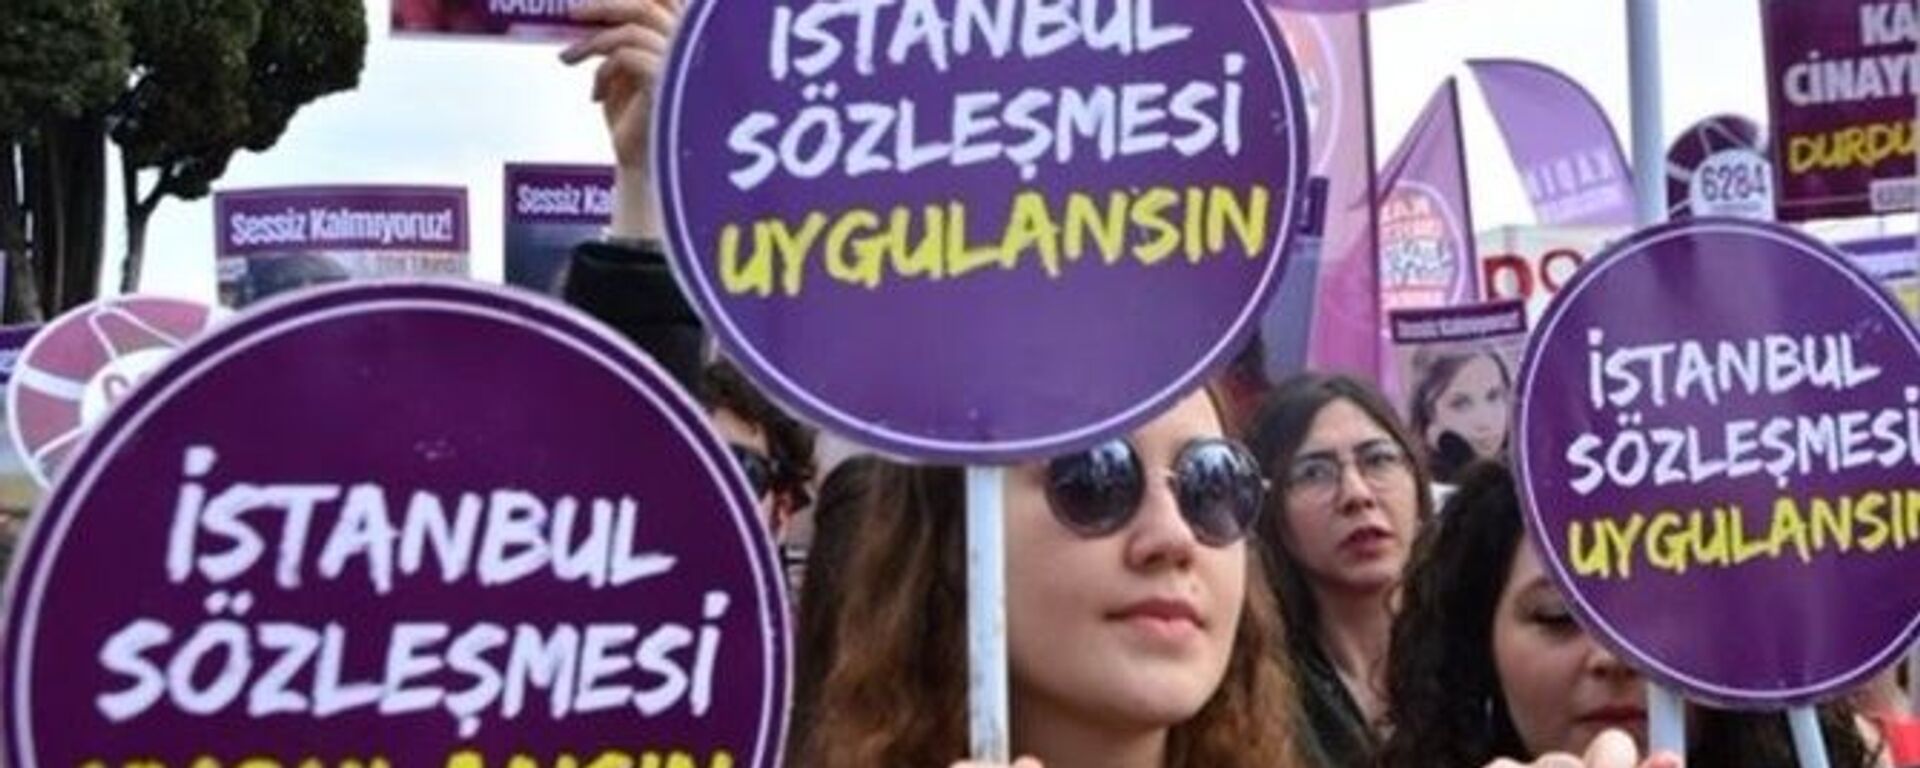 Kadına yönelik şiddet protestosu - İstanbul Sözleşmesi - Sputnik Türkiye, 1920, 20.03.2021